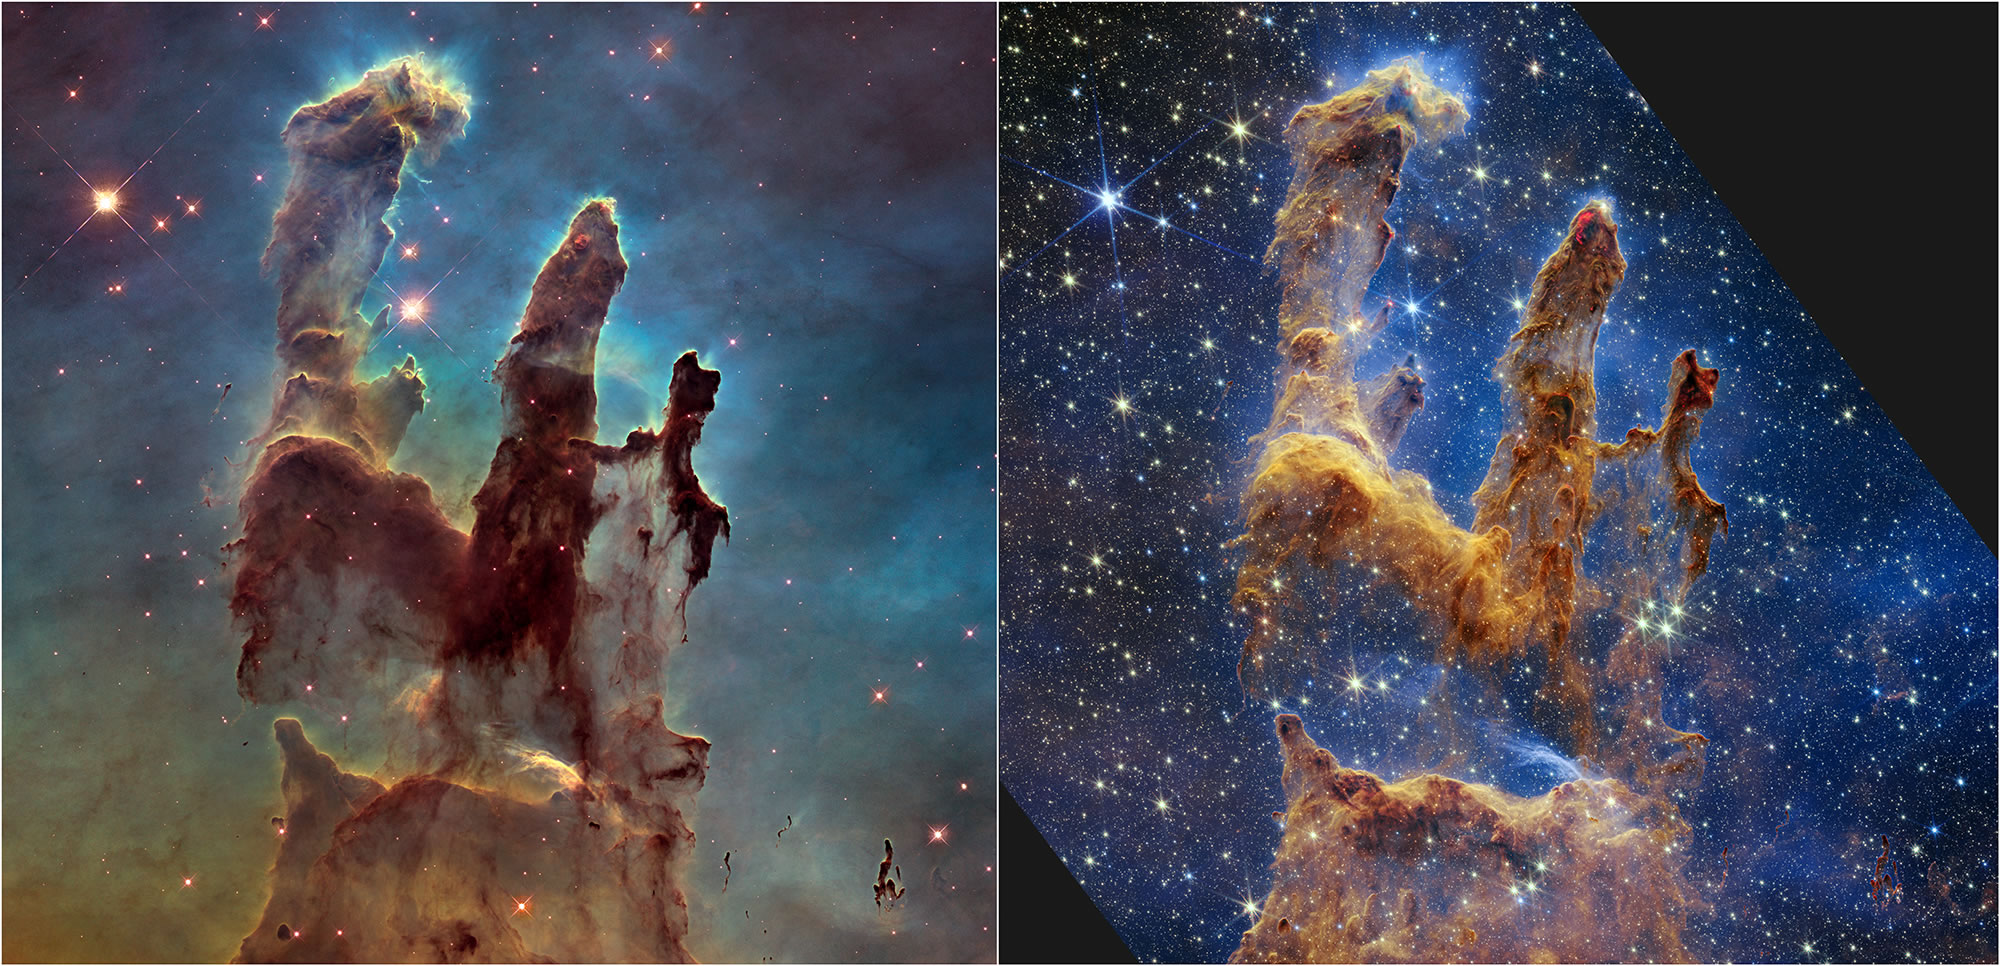 韦伯太空望远镜拍下著名的“创生之柱”照片 呈现出前所未见的细节